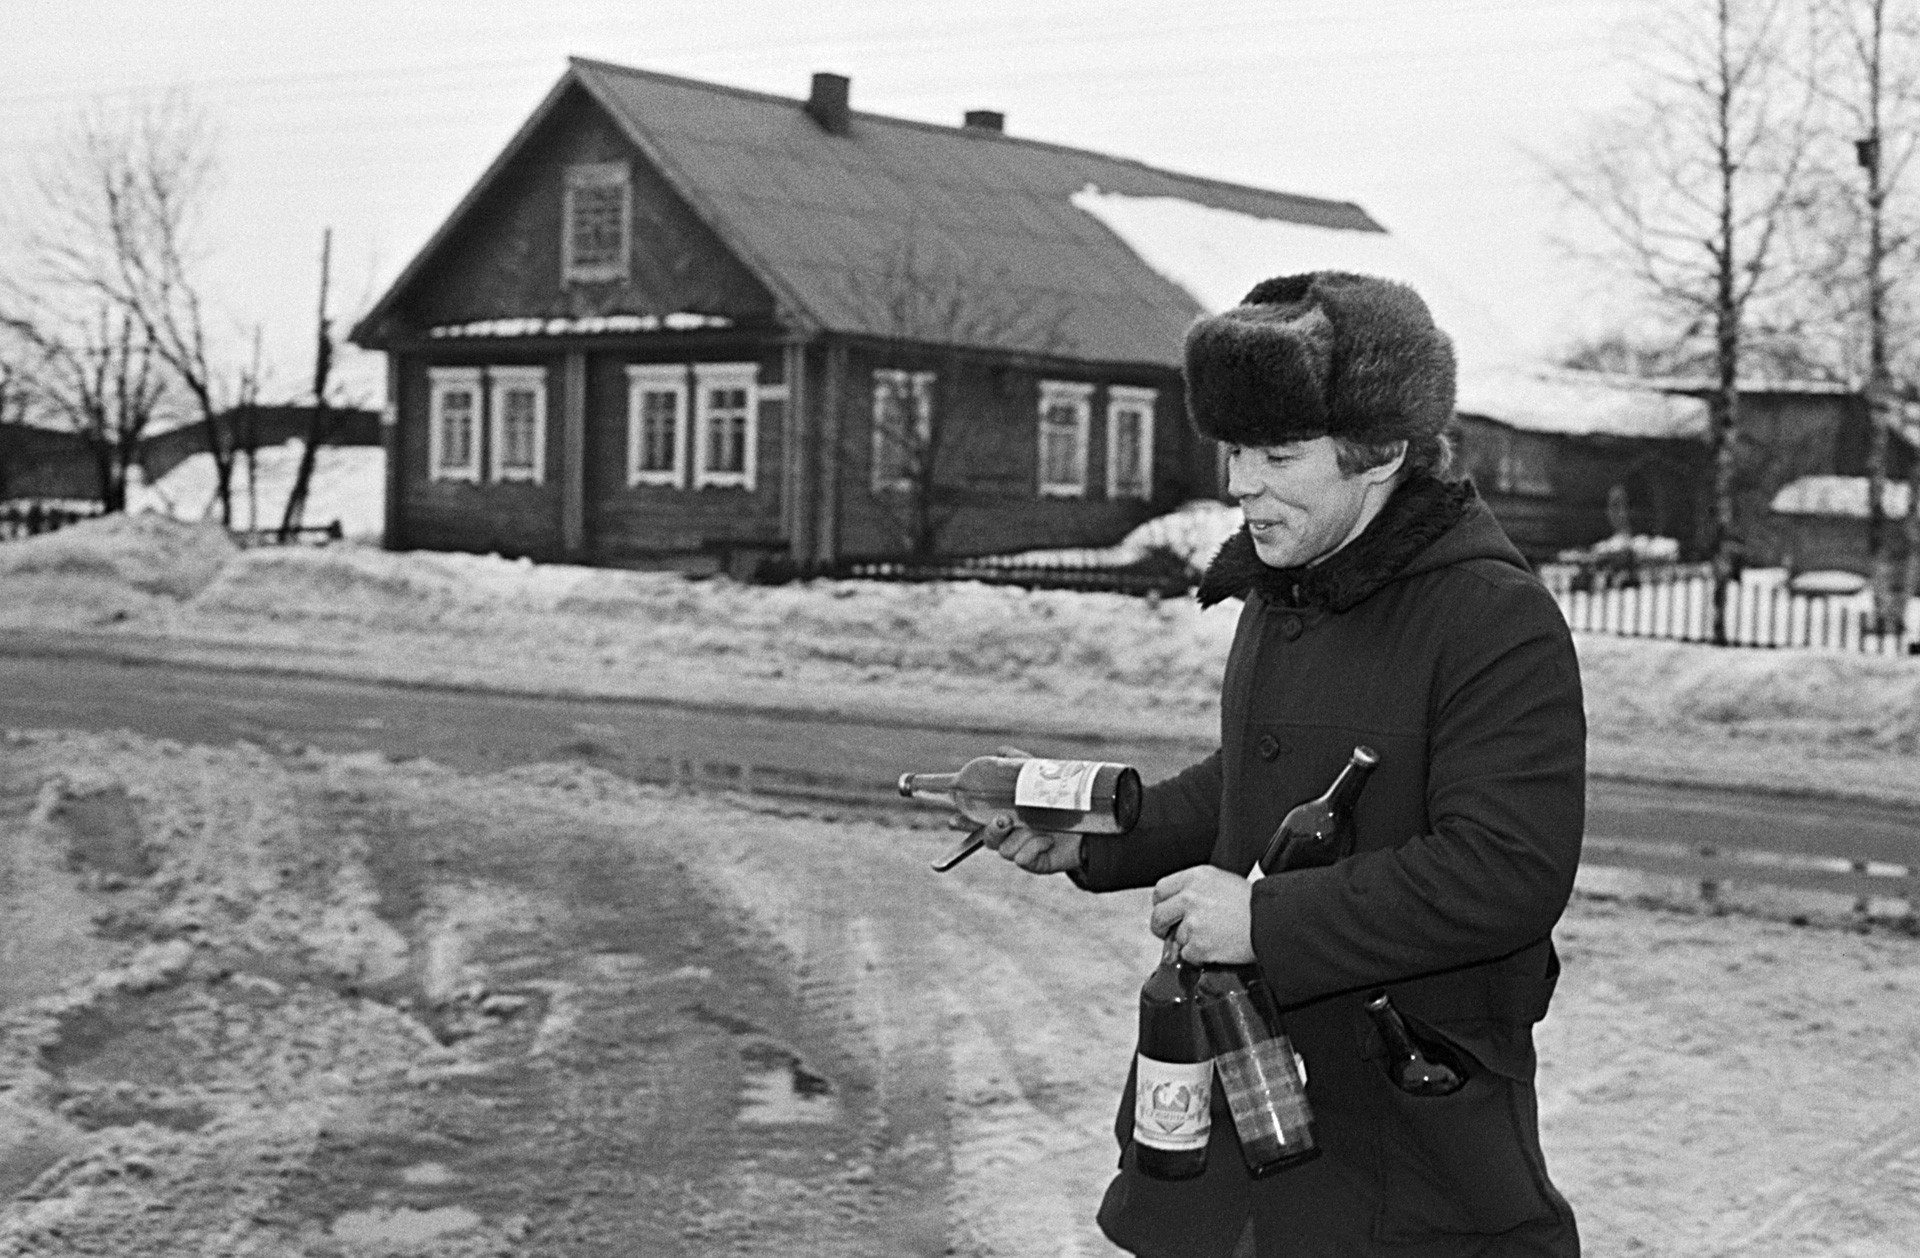 Morador local levando garrafas em uma aldeia soviética em 1990. 